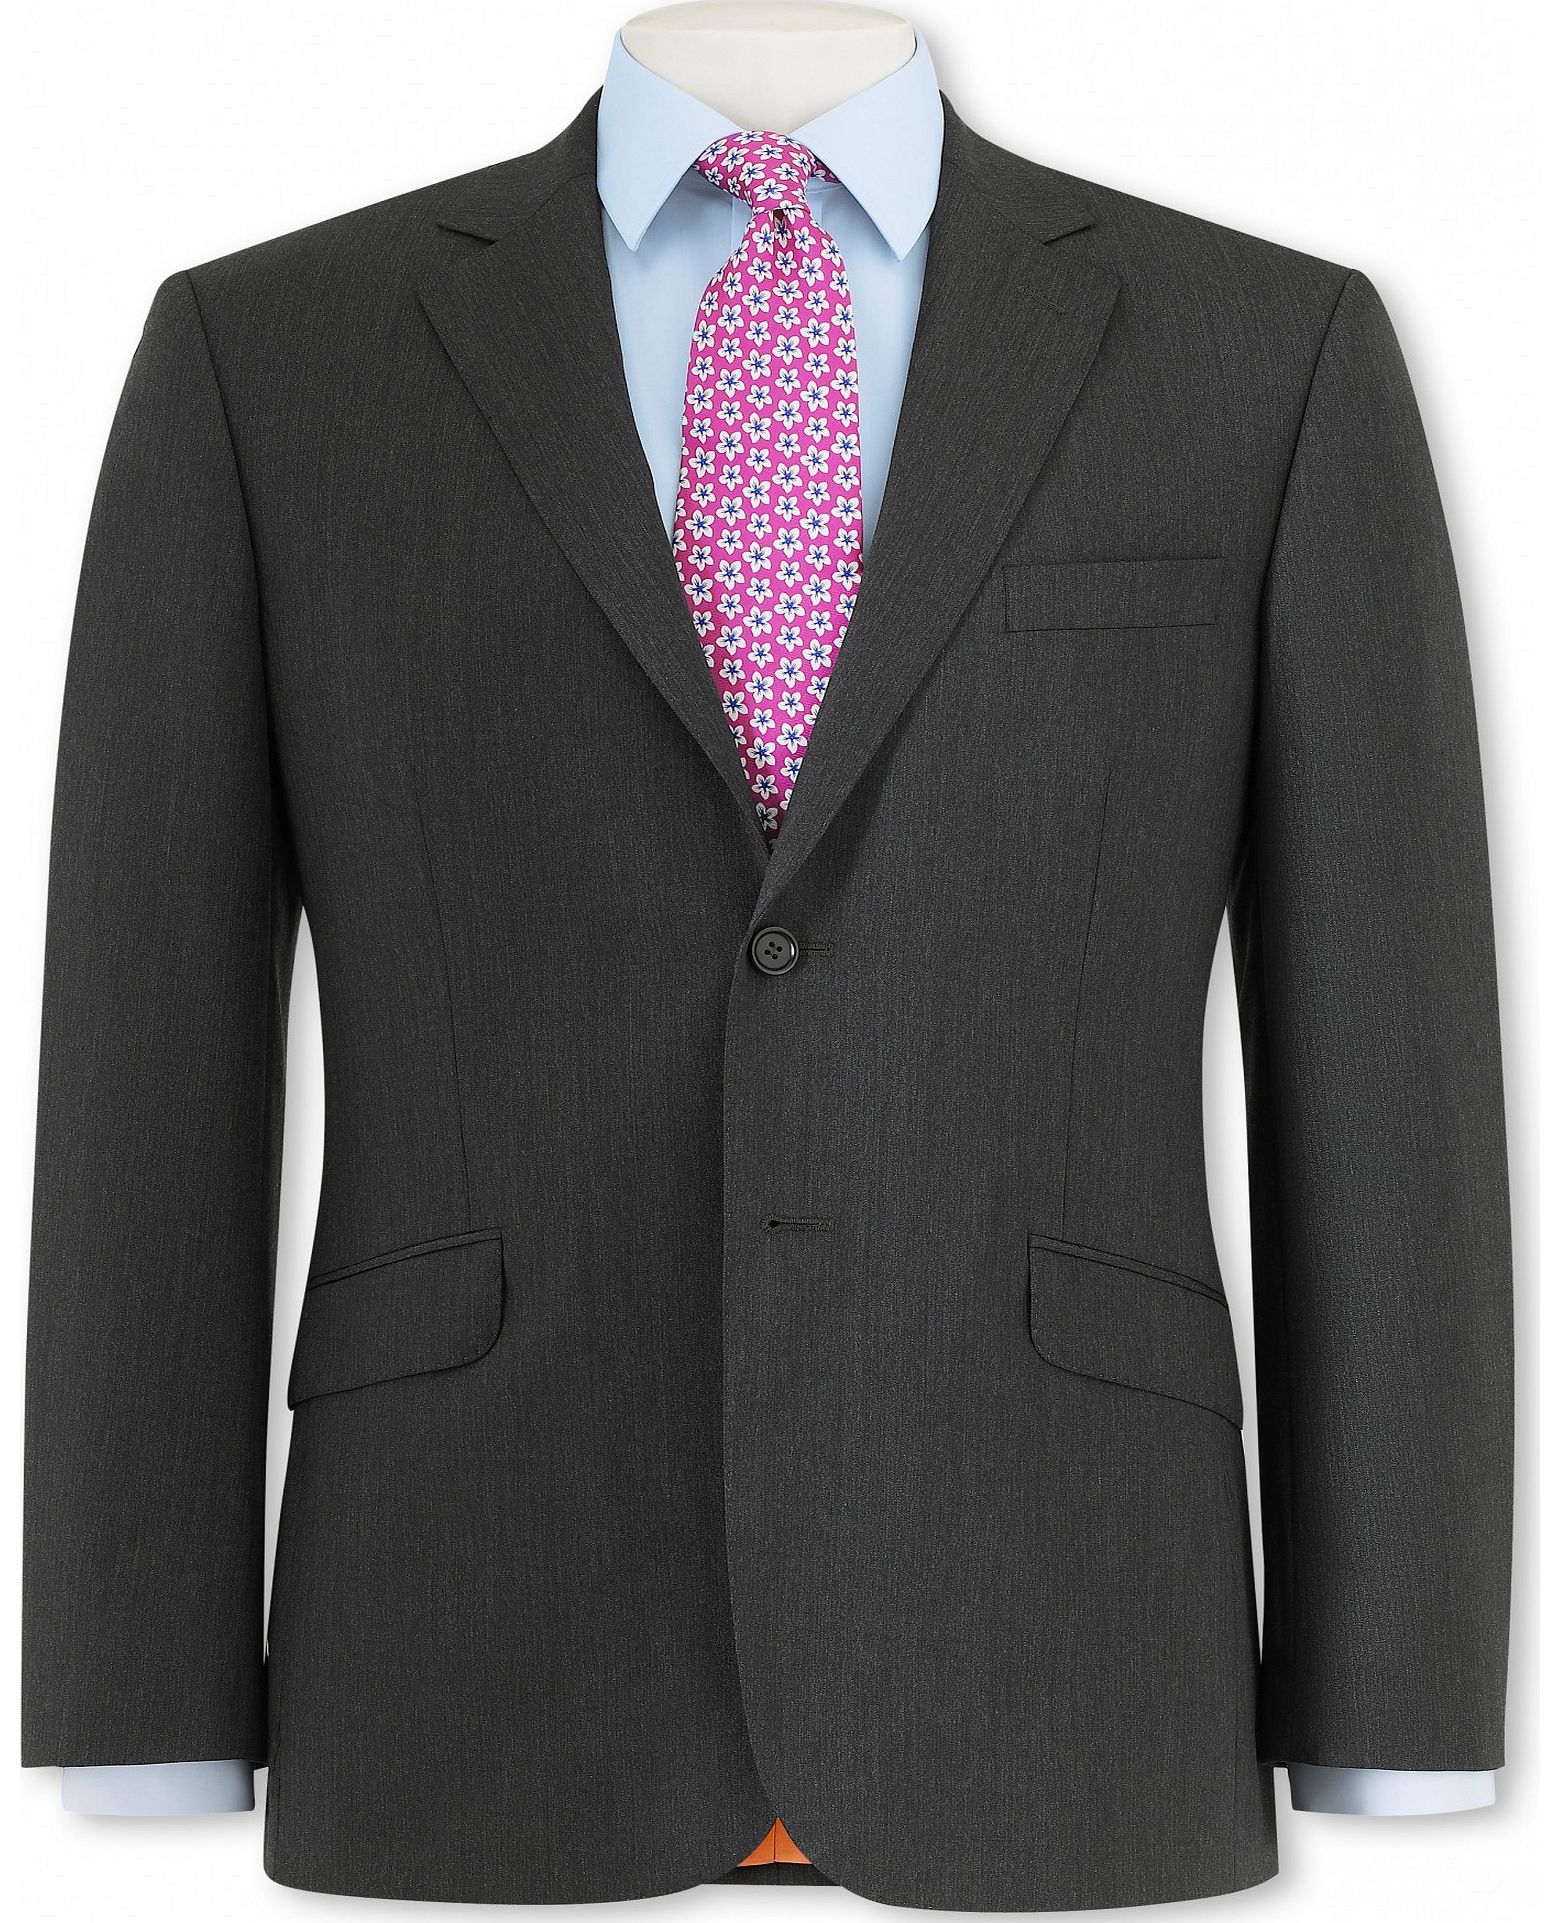 Grey Herringbone Suit Jacket 44`` Long